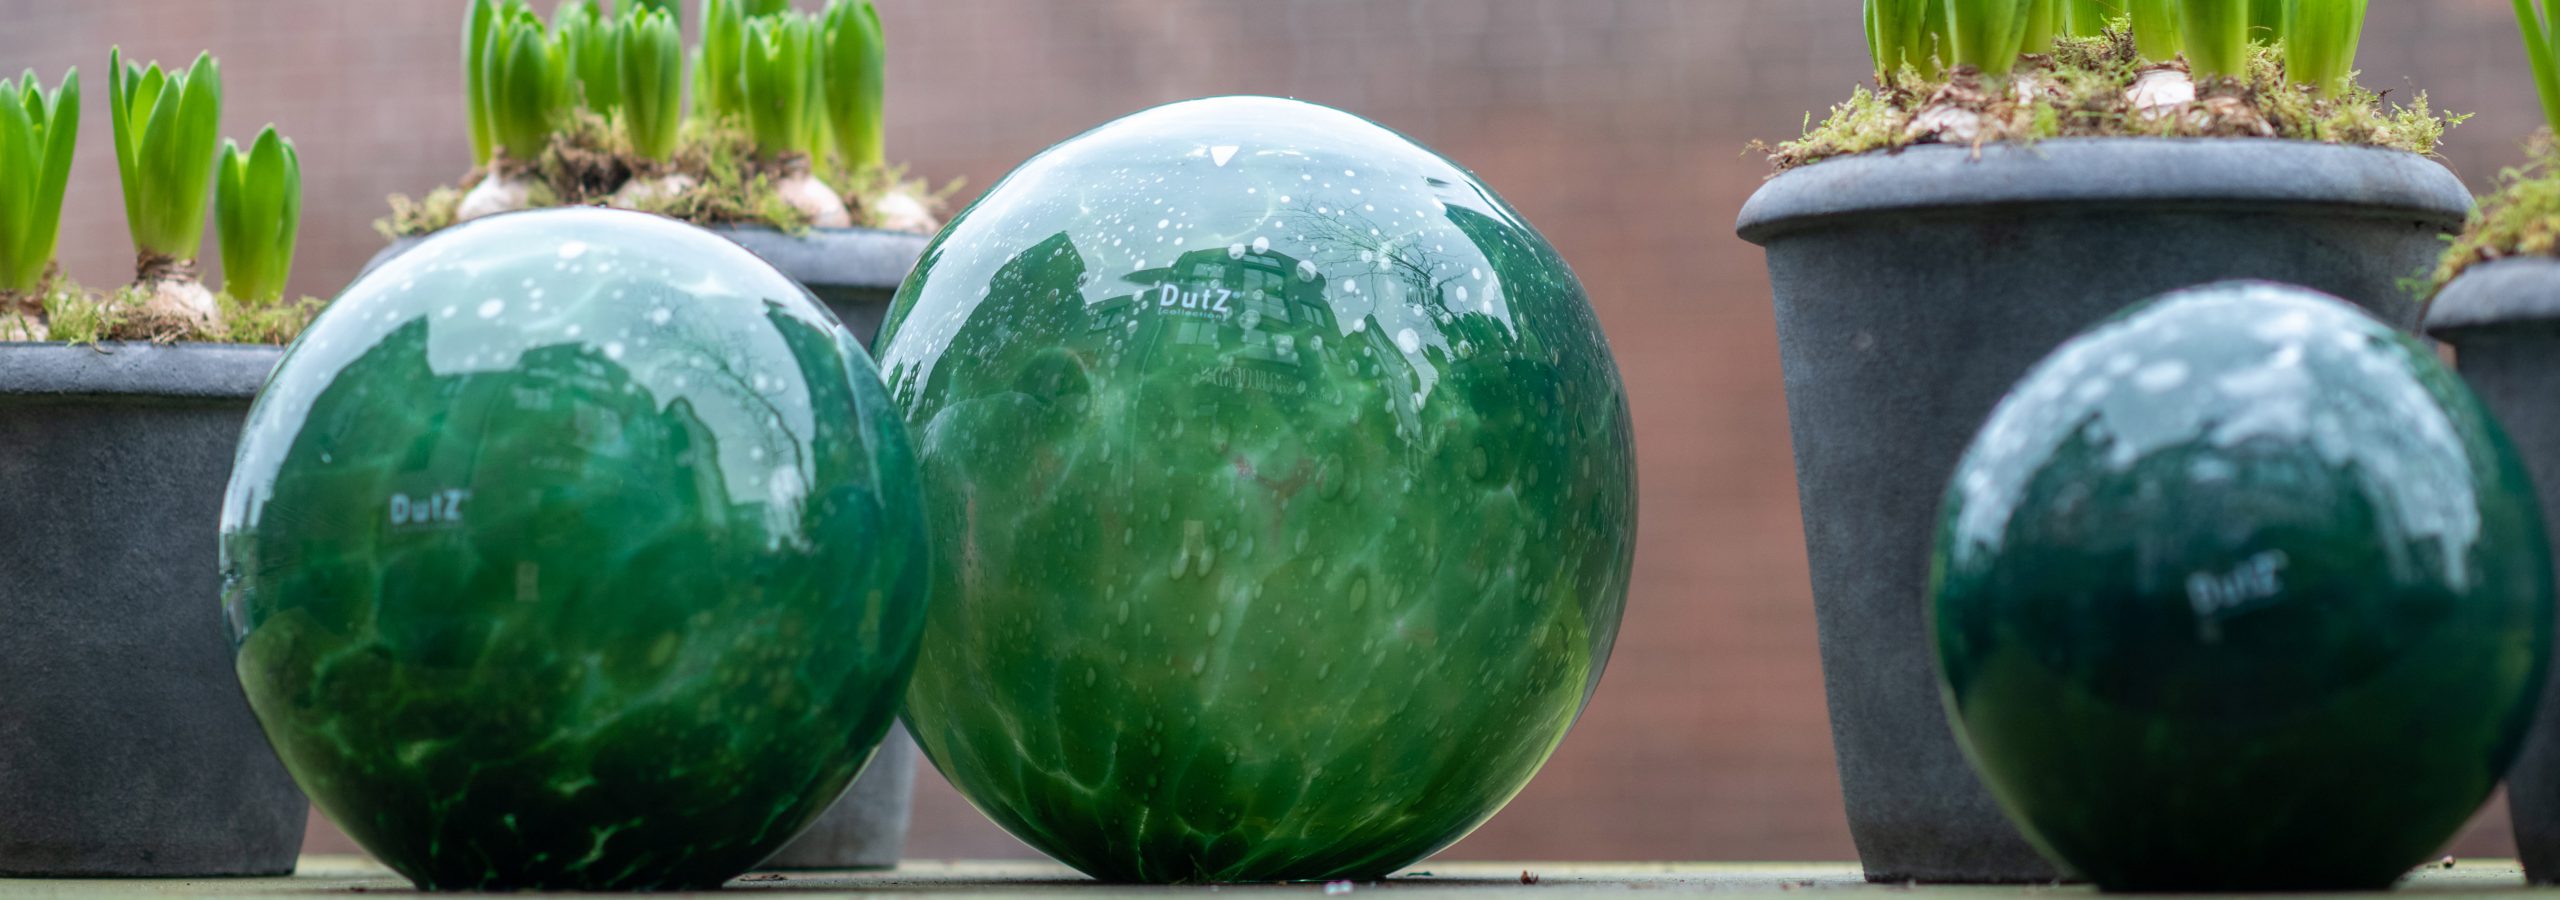 Dutz glazen tuinballen in de kleur donkergroen. Er liggen drie formaten op een tuintafel